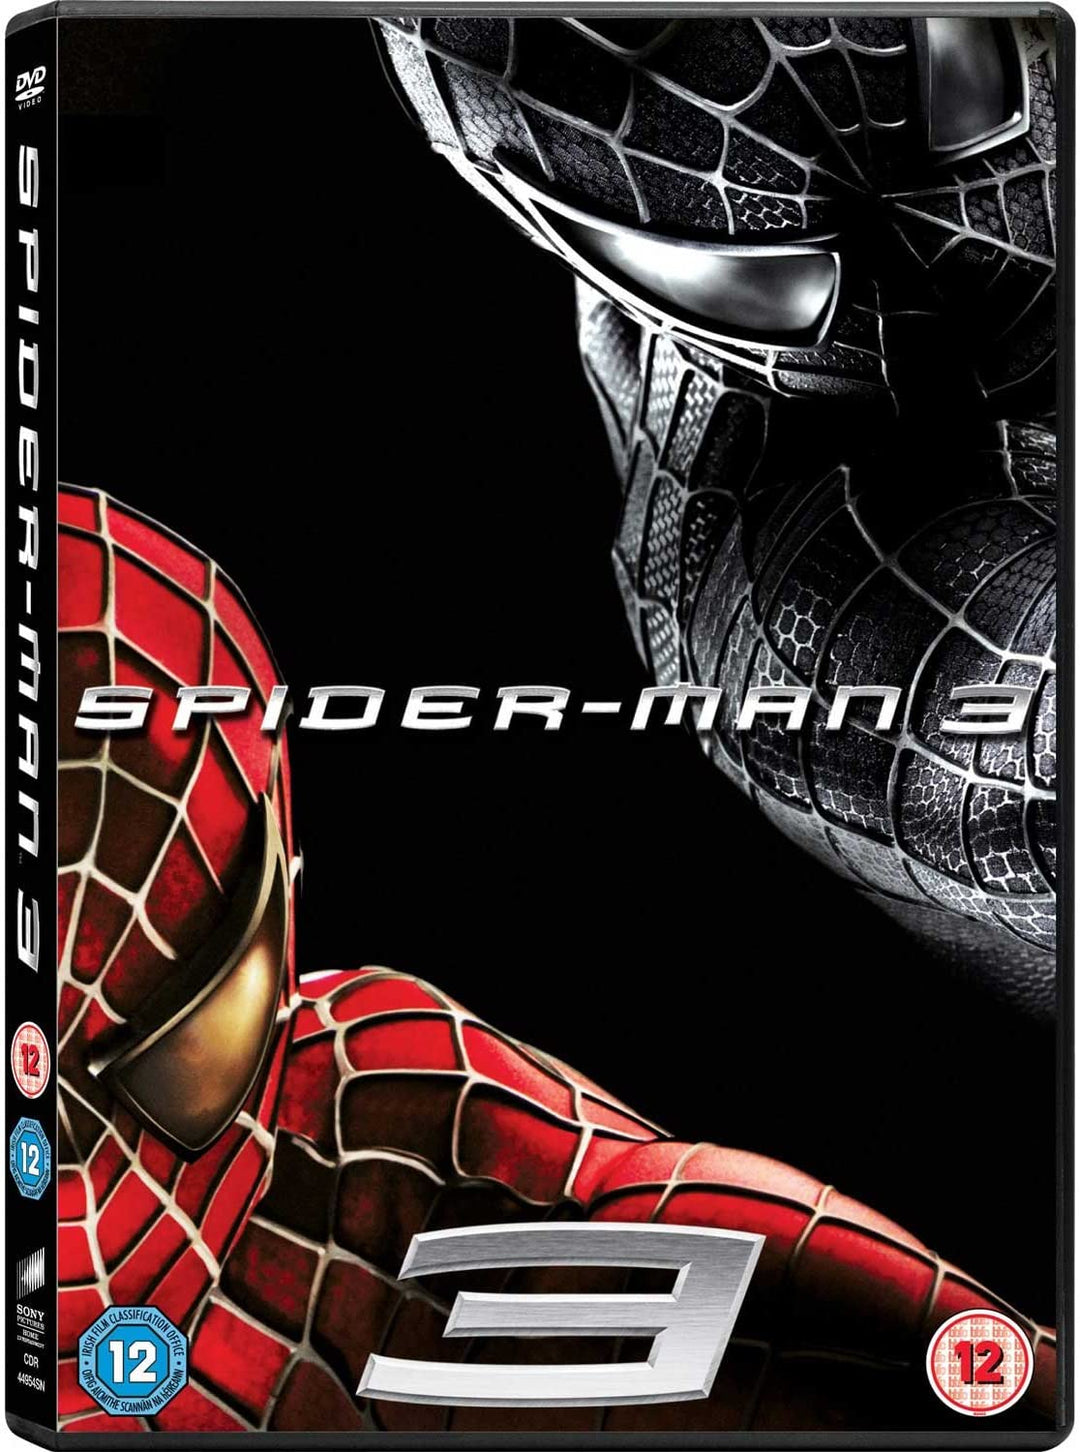 Spider-Man 3 (2007) - Action/Adventure [DVD]